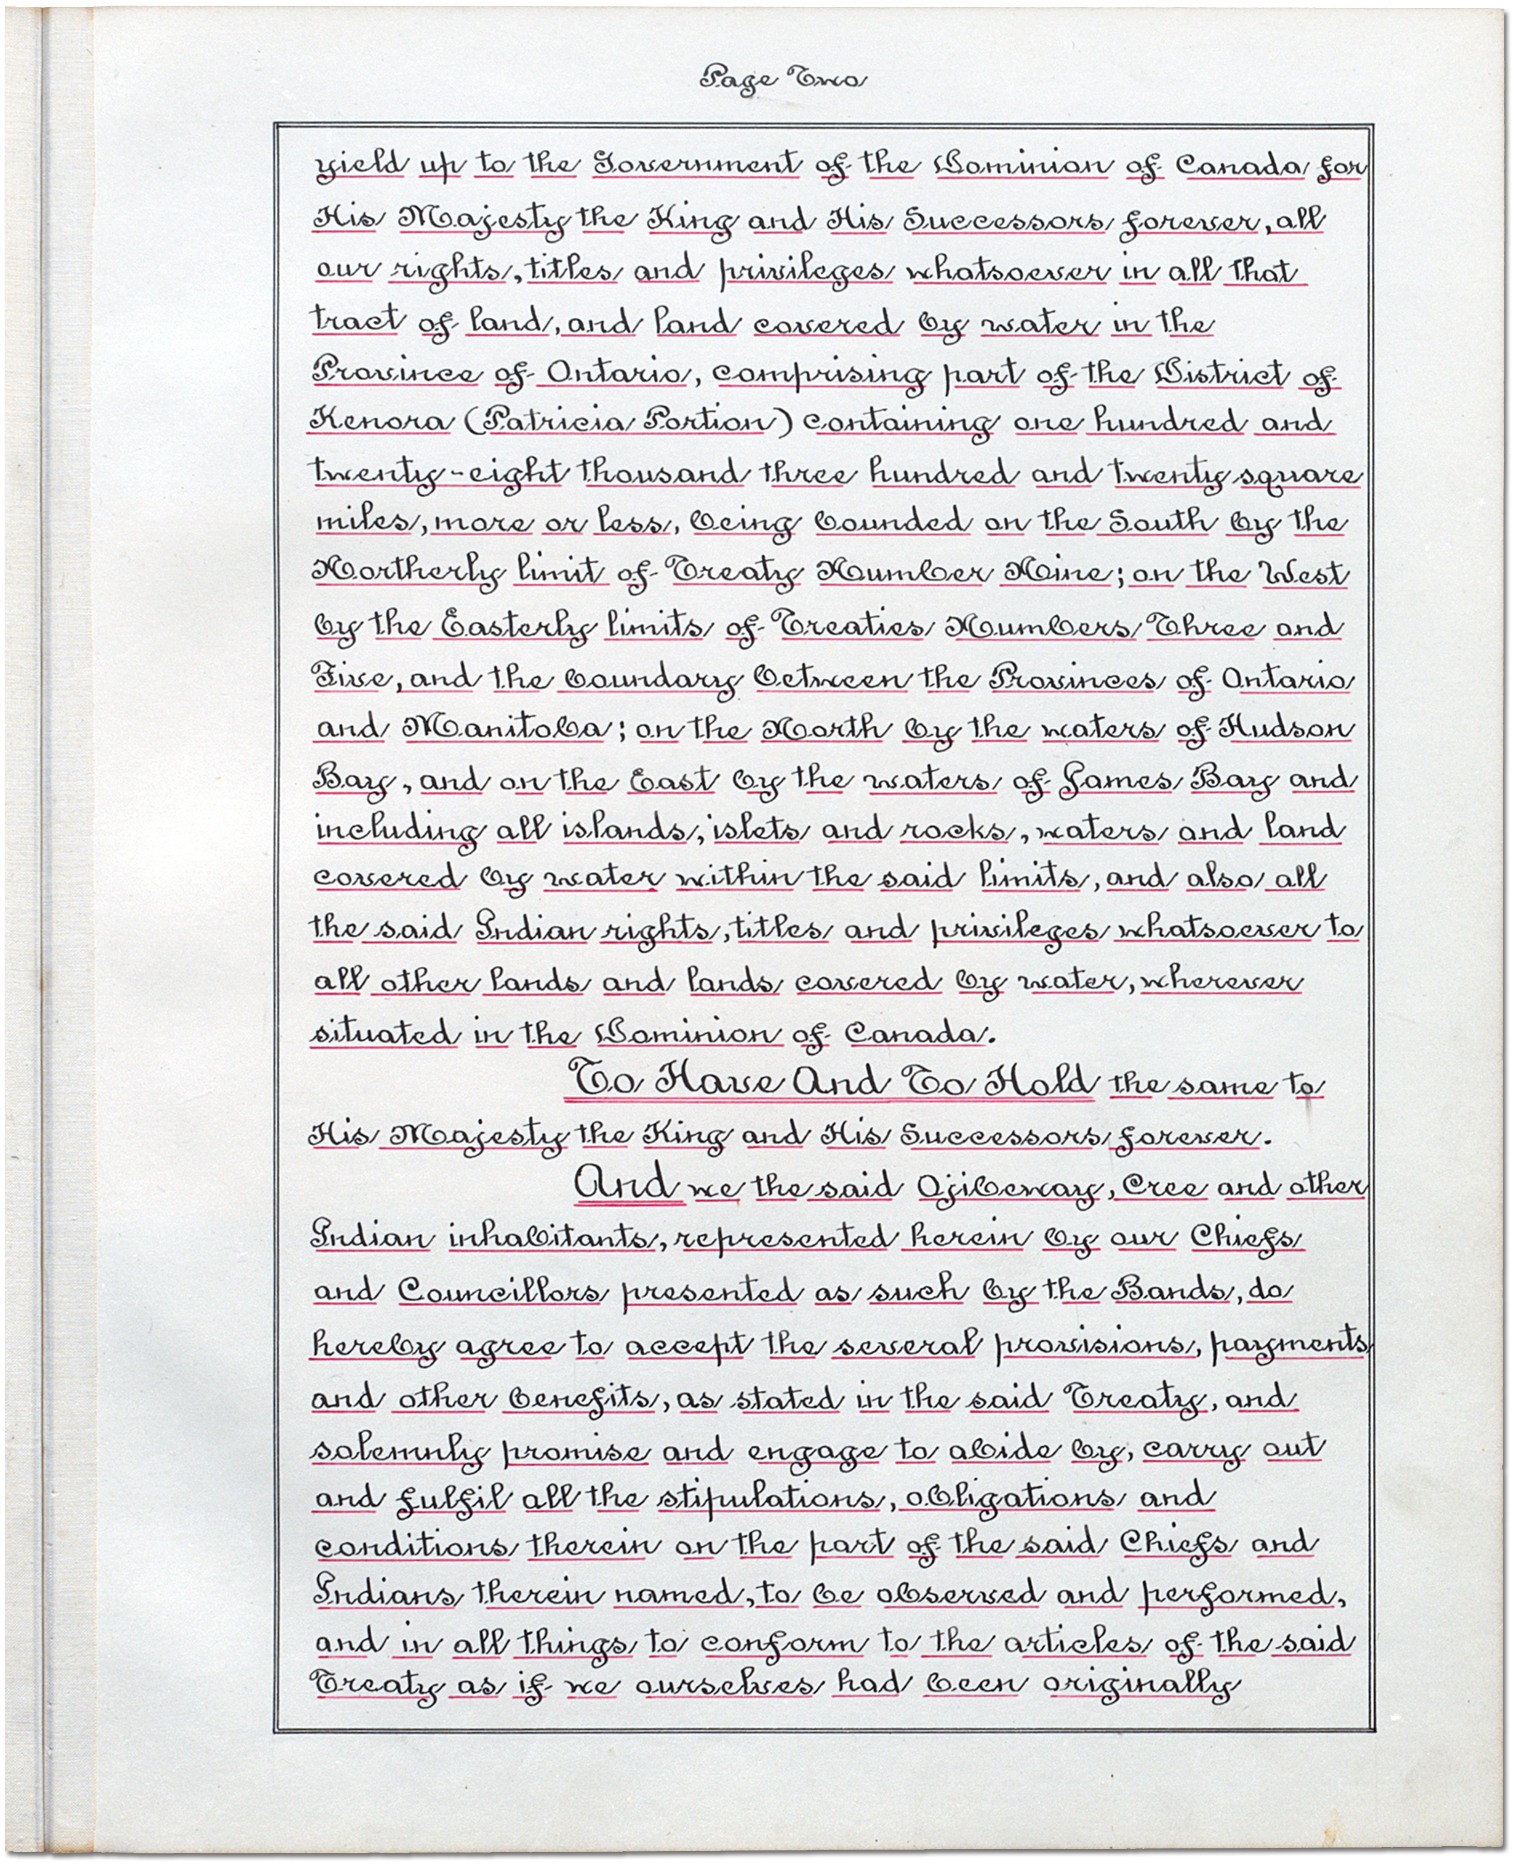 James Bay Treaty (Treaty No. 9) - Adhesions [page 2]